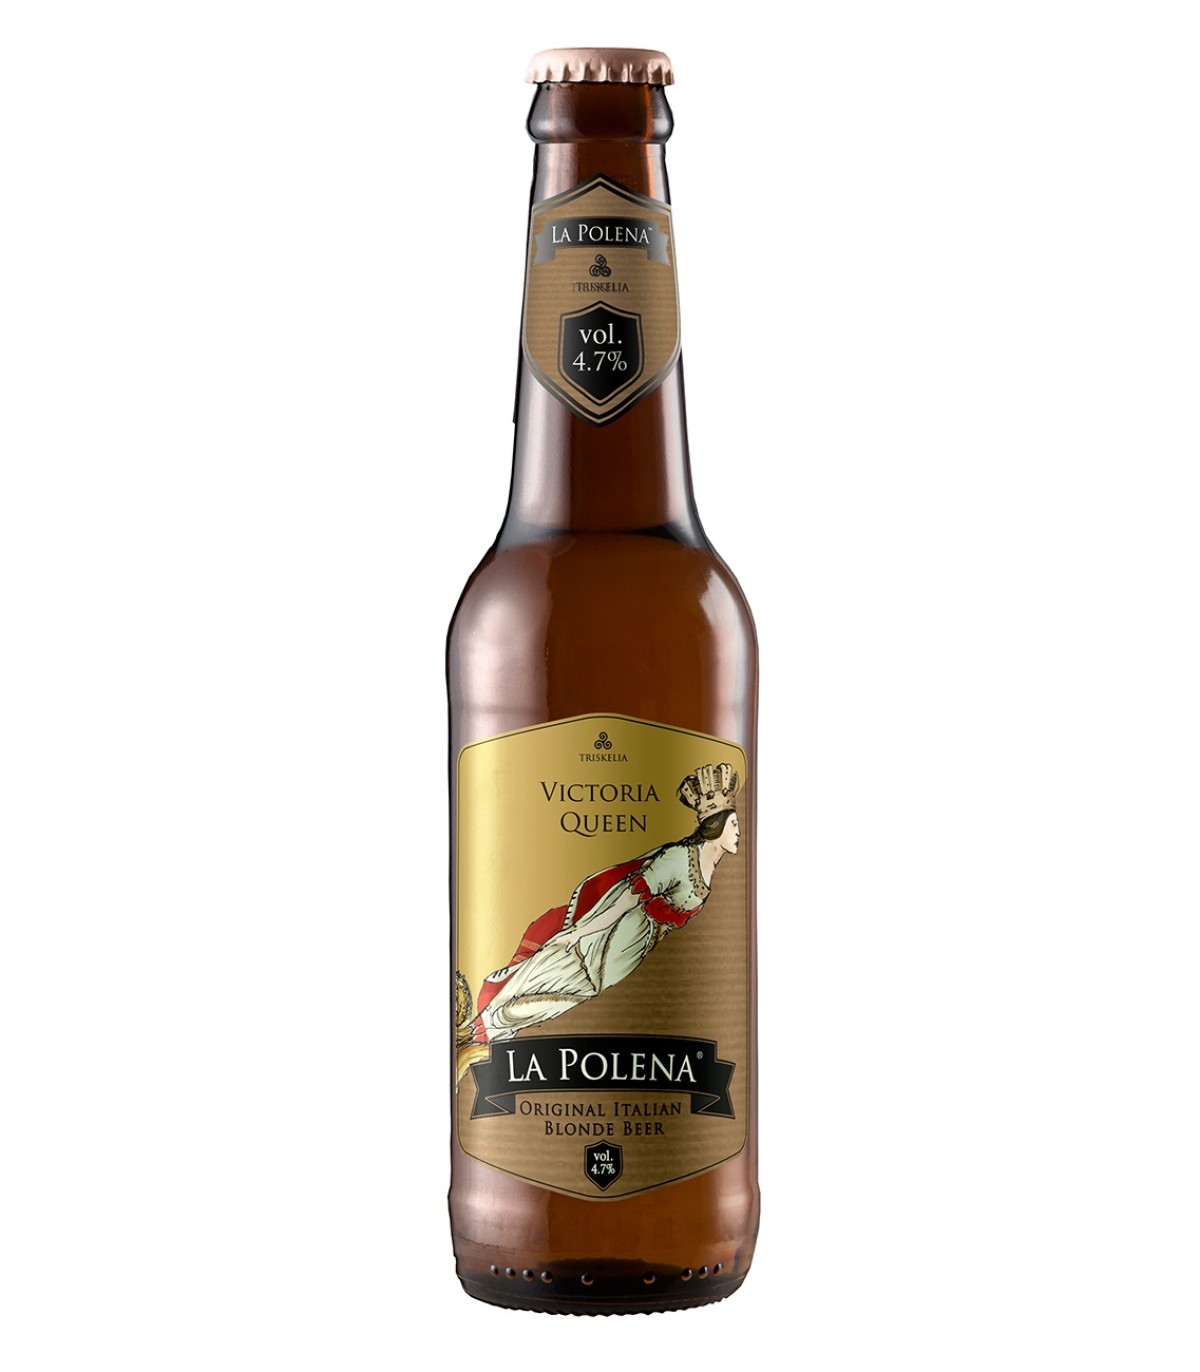 Victoria Queen raw blonde beer 4.7% Vol. - La Polena